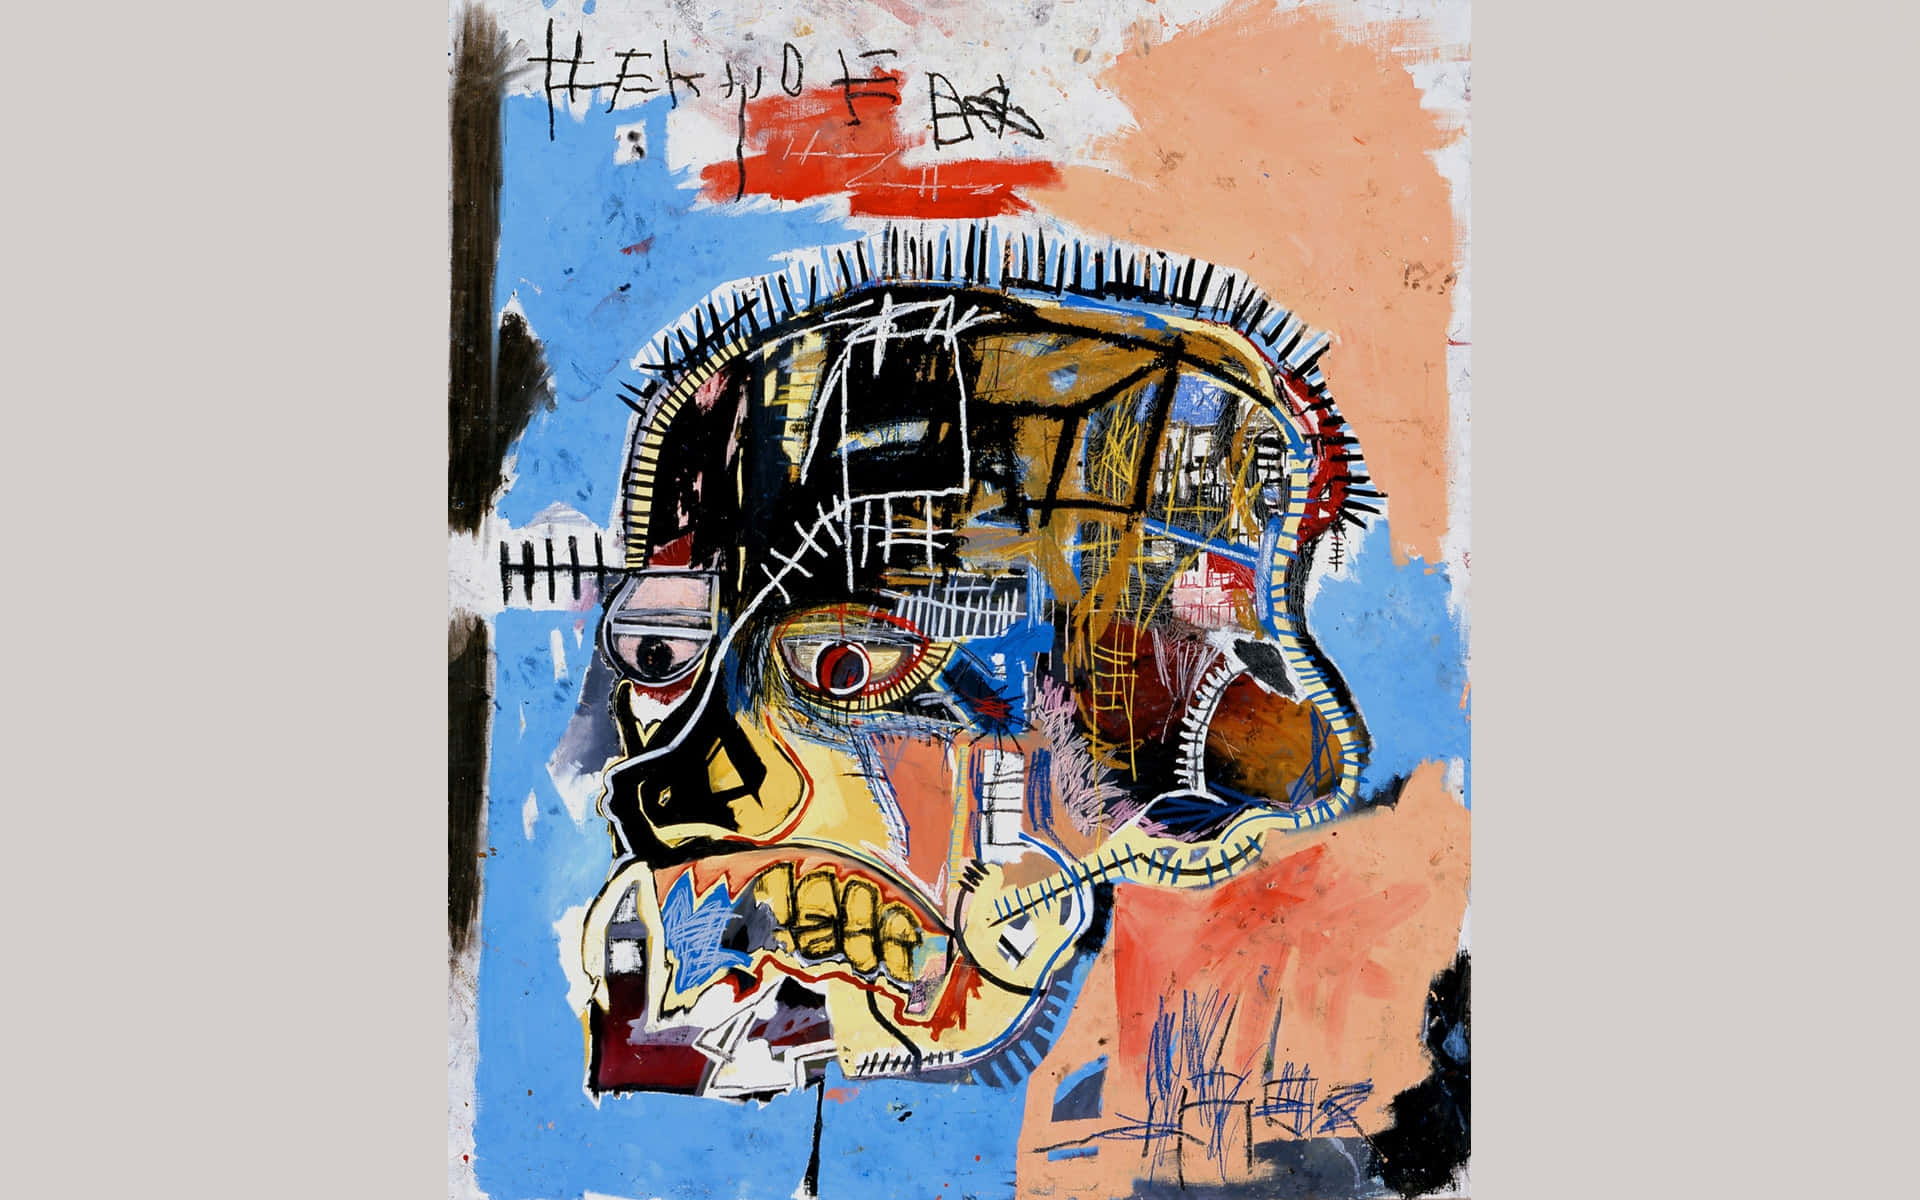 Jean-Michel Basquiat, den amerikanske kunstner, der kombinerede abstrakt expressionisme med gadekunst, er fremhævet på dette tapet. Wallpaper